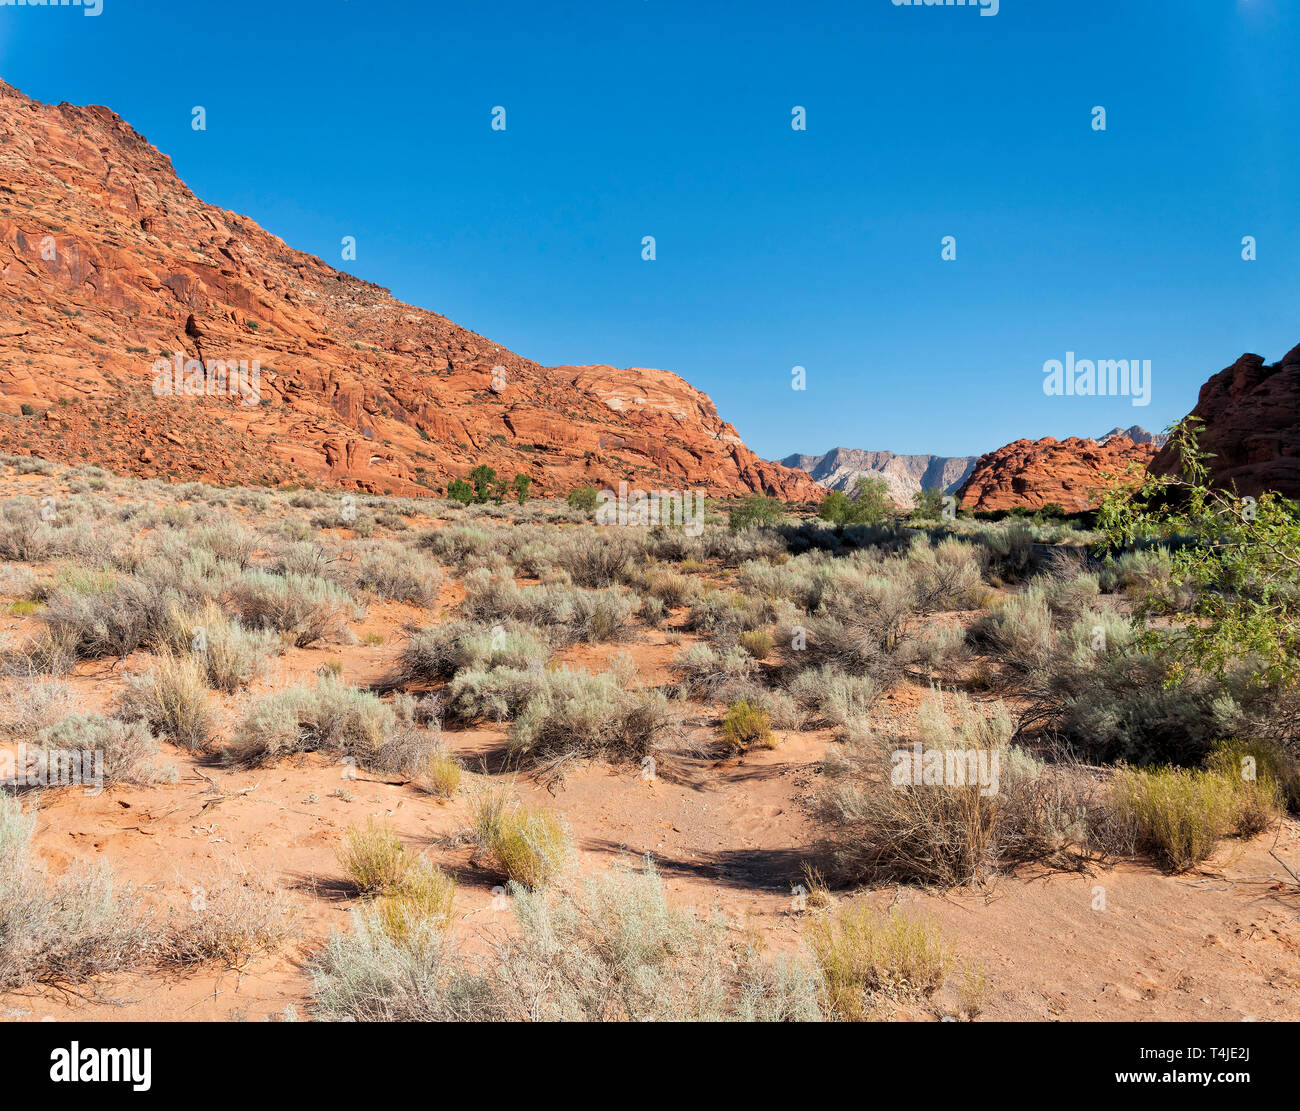 Deserto sabbioso suoli con sagebrush e macchia verde, arancione rossastro scoscese pareti del canyon e ingresso alla vallata desertica al di là sotto un cielo blu. Foto Stock